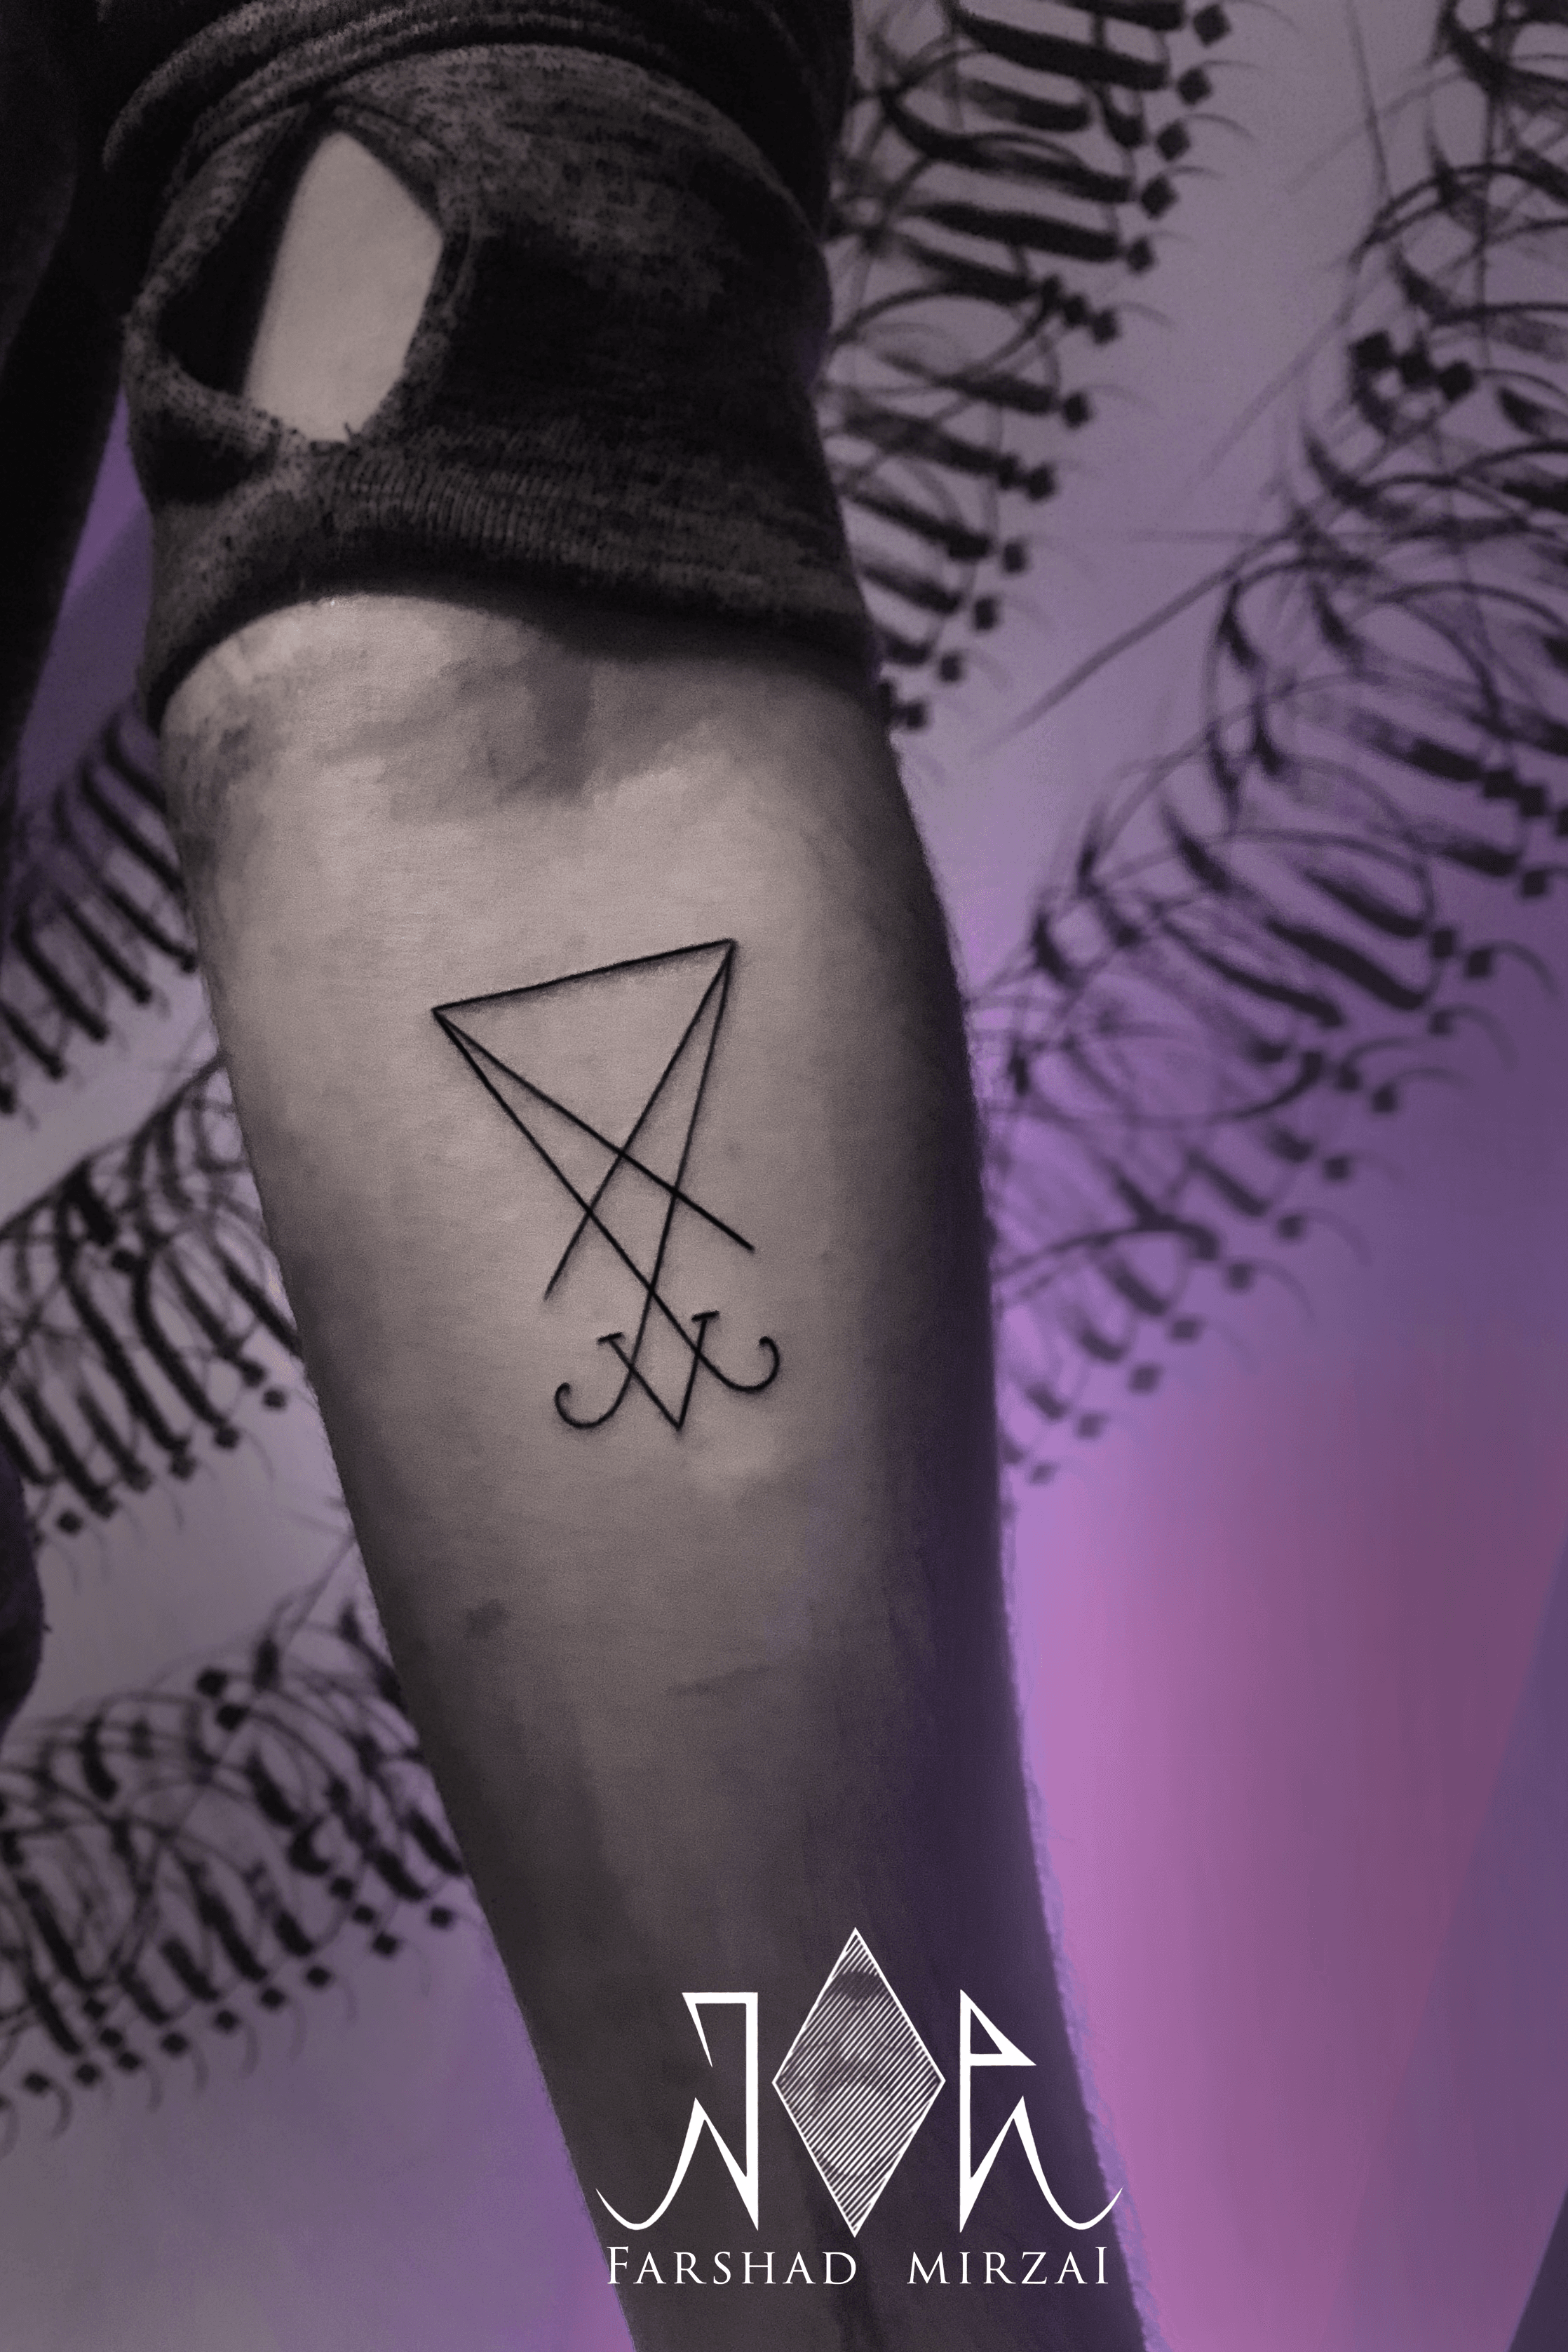 Satan Badge Tattoo, một hình xăm với image quỷ Satan đầu lâu đang trở thành xu hướng mới trong thế giới của những người yêu nghệ thuật hình xăm. Sự pha trộn giữa nghệ thuật và huyền bí và sức mạnh của nó, đảm bảo sẽ thu hút sự chú ý của tất cả những ai yêu thích nghệ thuật hình xăm.